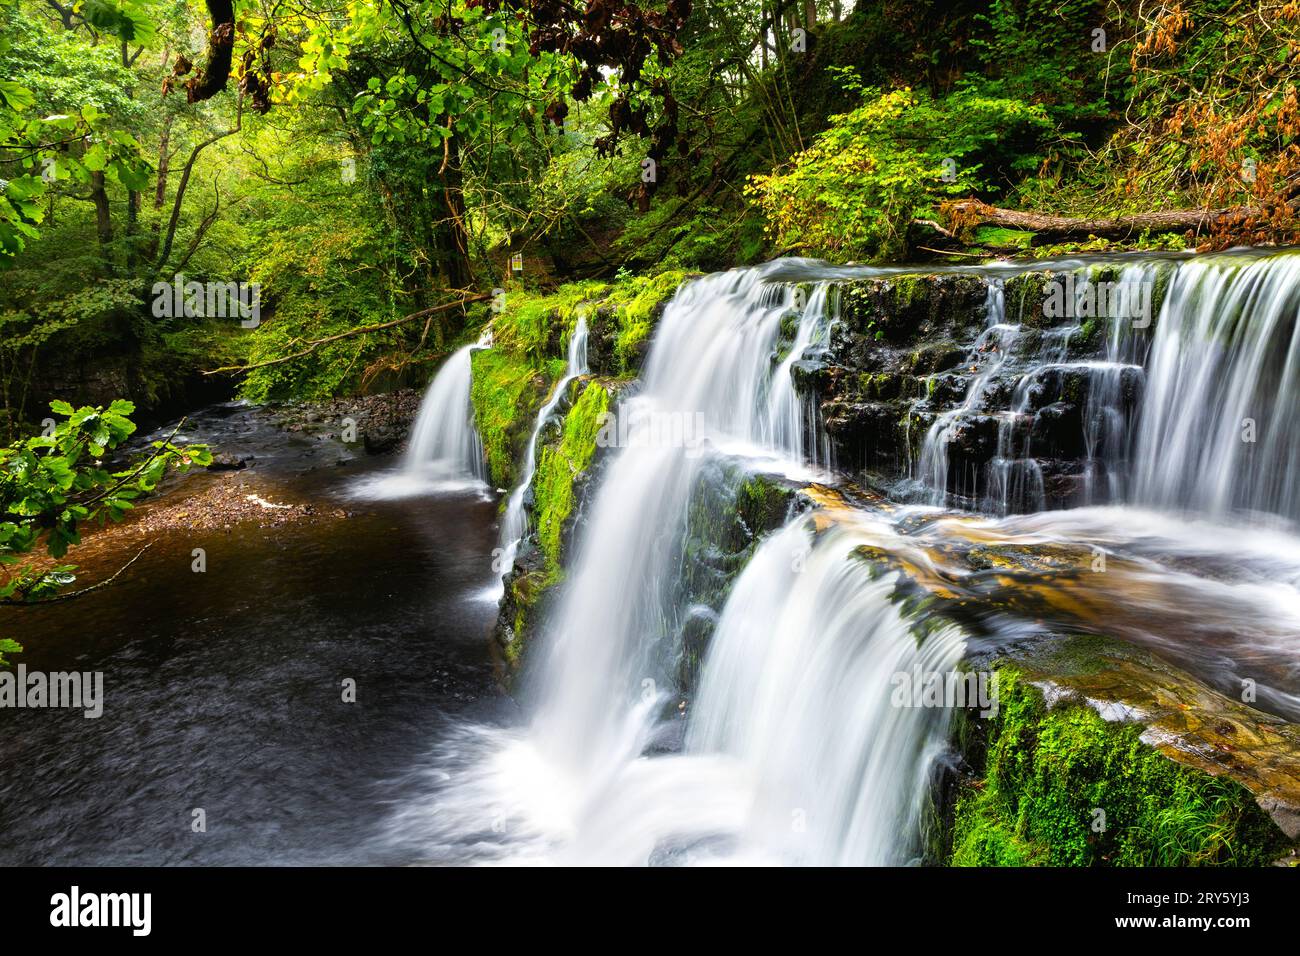 Cascade de Sgwd y Pannwr, promenade de four Waterfalls, parc national de Brecon Beacons, pays de Galles, Royaume-Uni Banque D'Images